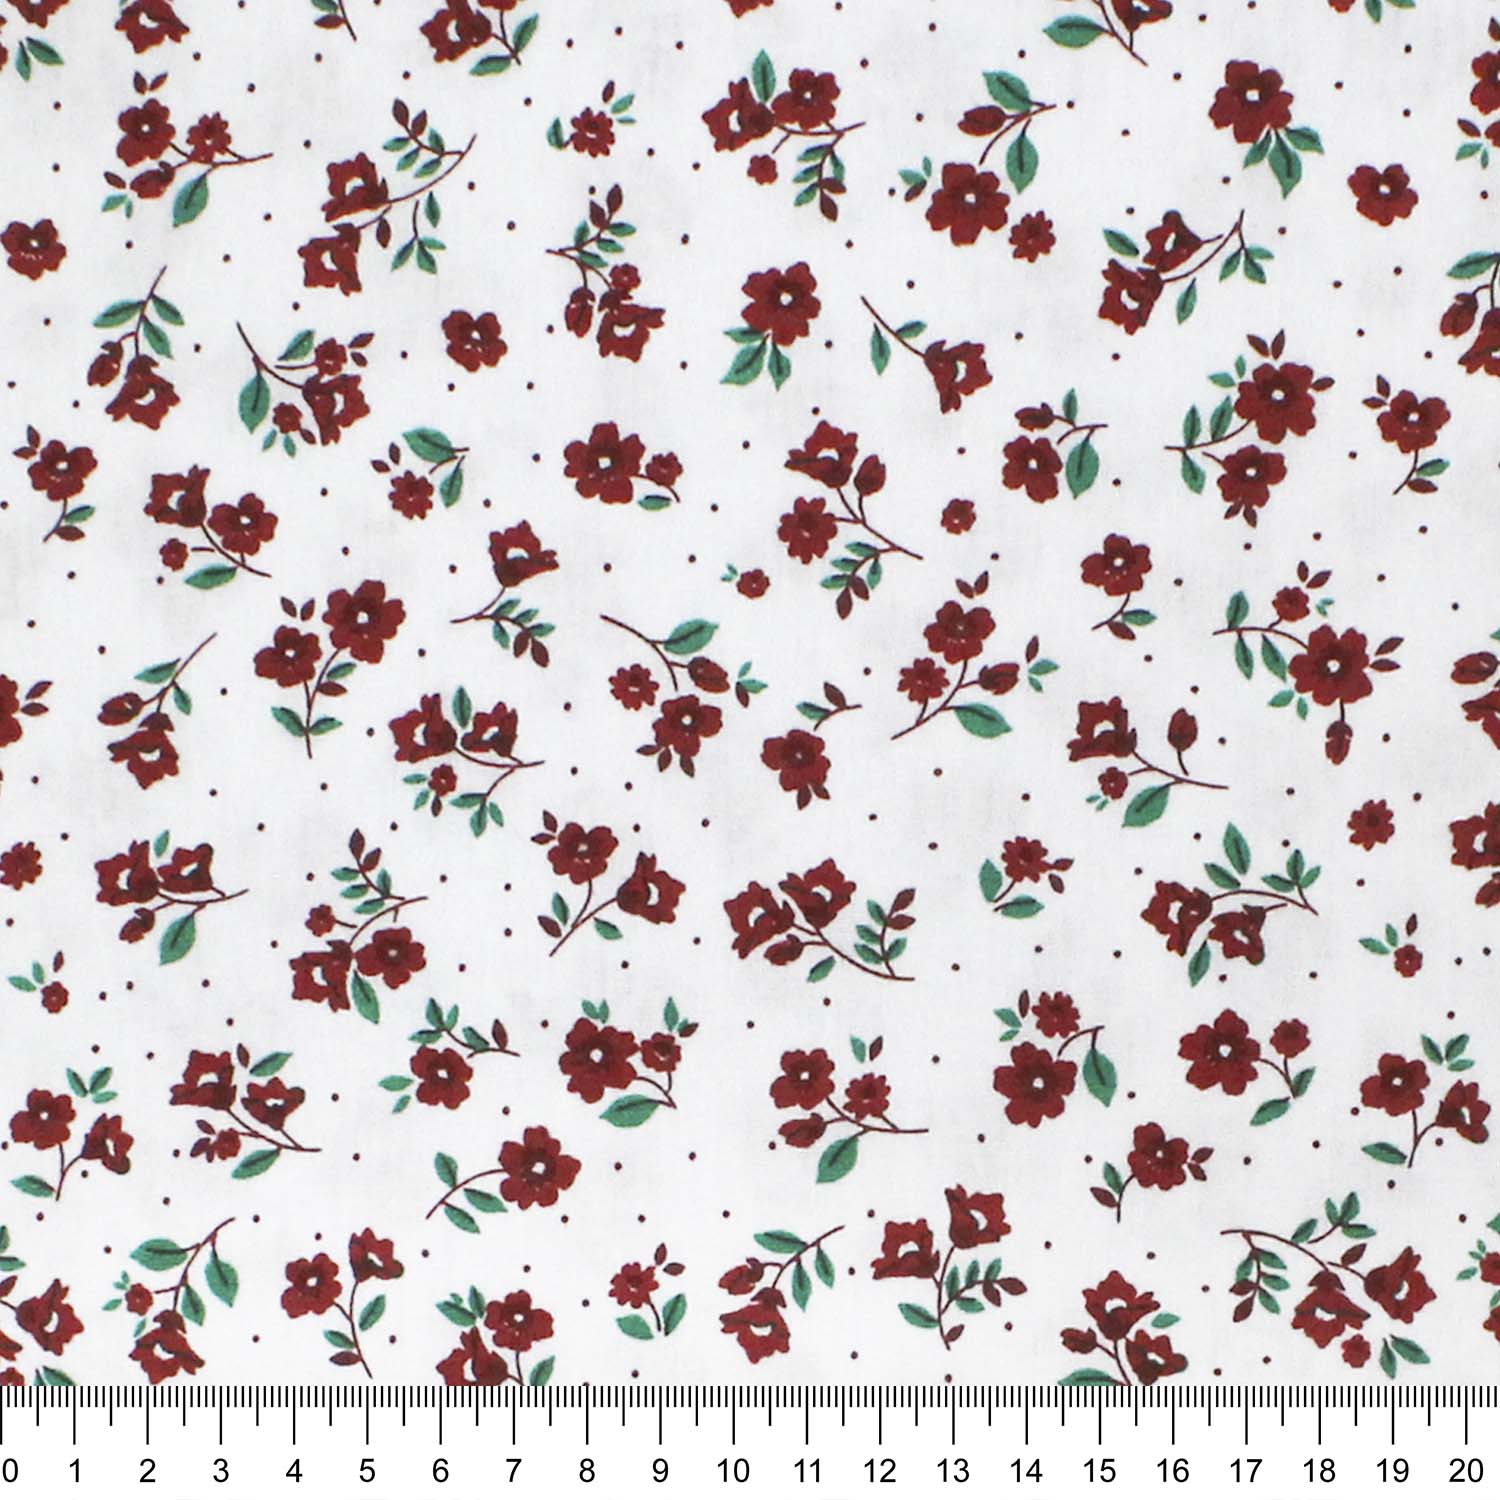 tecido-tricoline-flores-pequenas-vermelhas-fundo-branco-della-aviamentos-10959_1